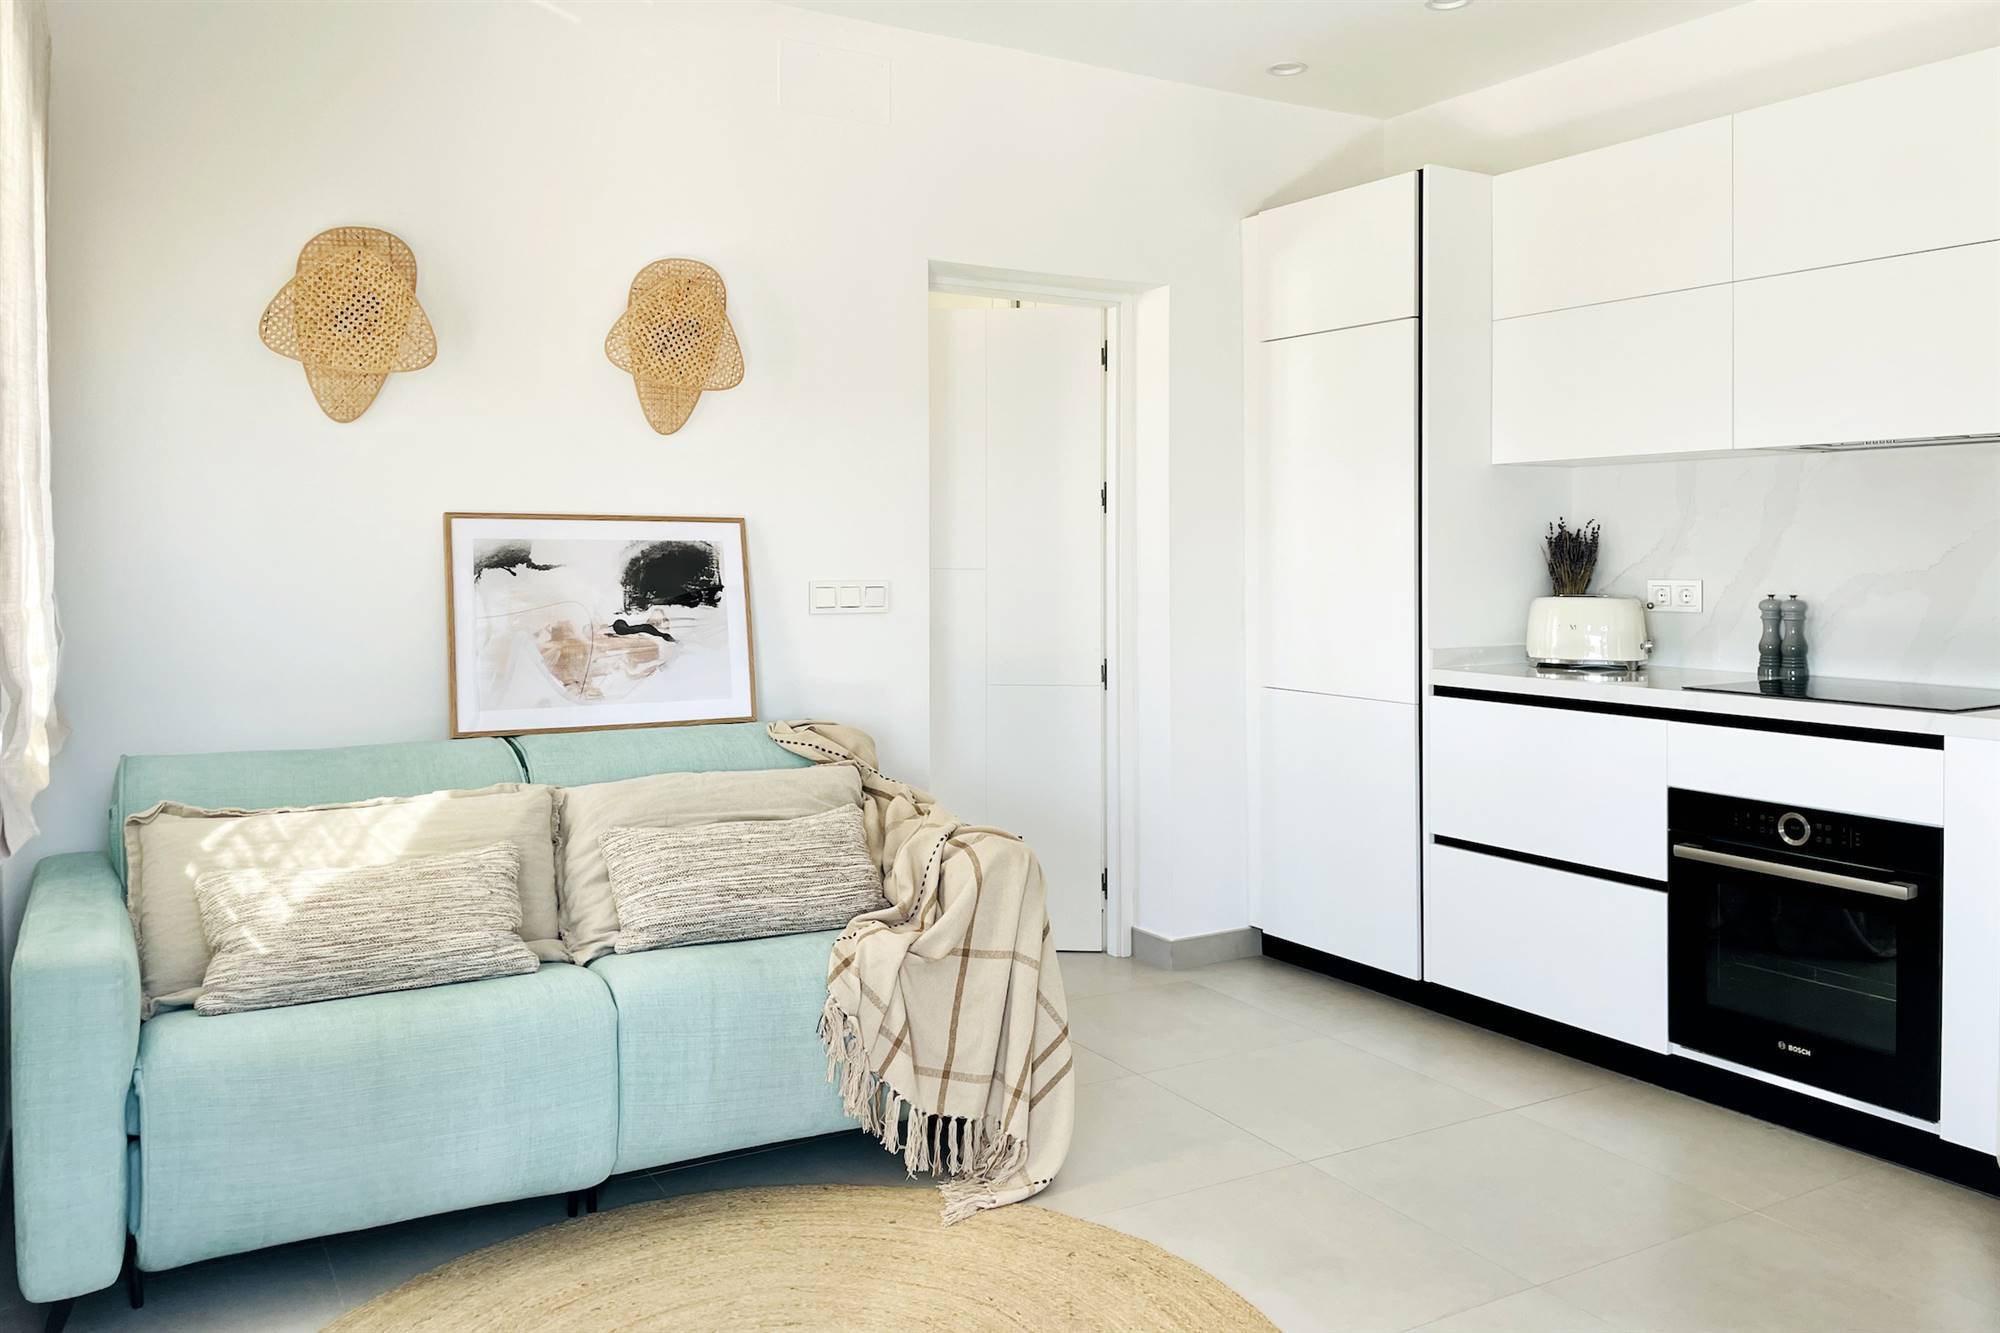 Pequeño salón moderno junto a la cocina abierta con mobiliario en color blanco.